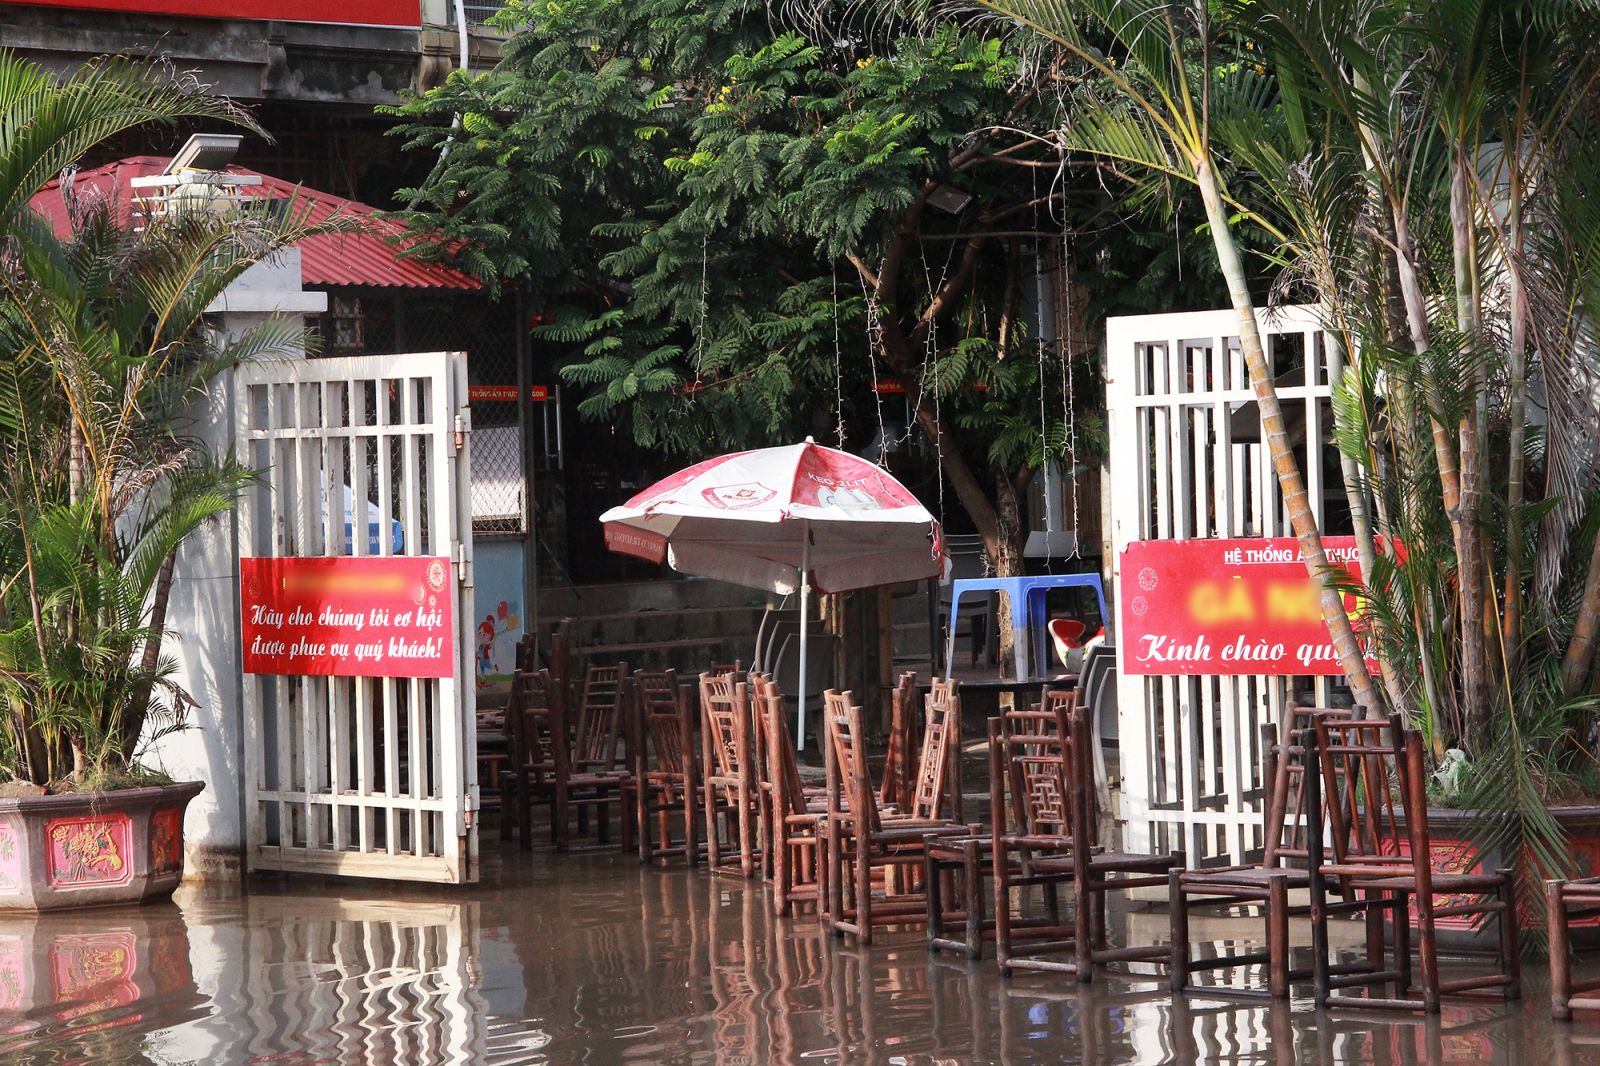 Quán ăn bên đường Lê Trọng Tấn cũng chịu cảnh ngập nước sau trận mưa. Đến hiện tại, nước vẫn chưa có dấu hiệu rút xuống.